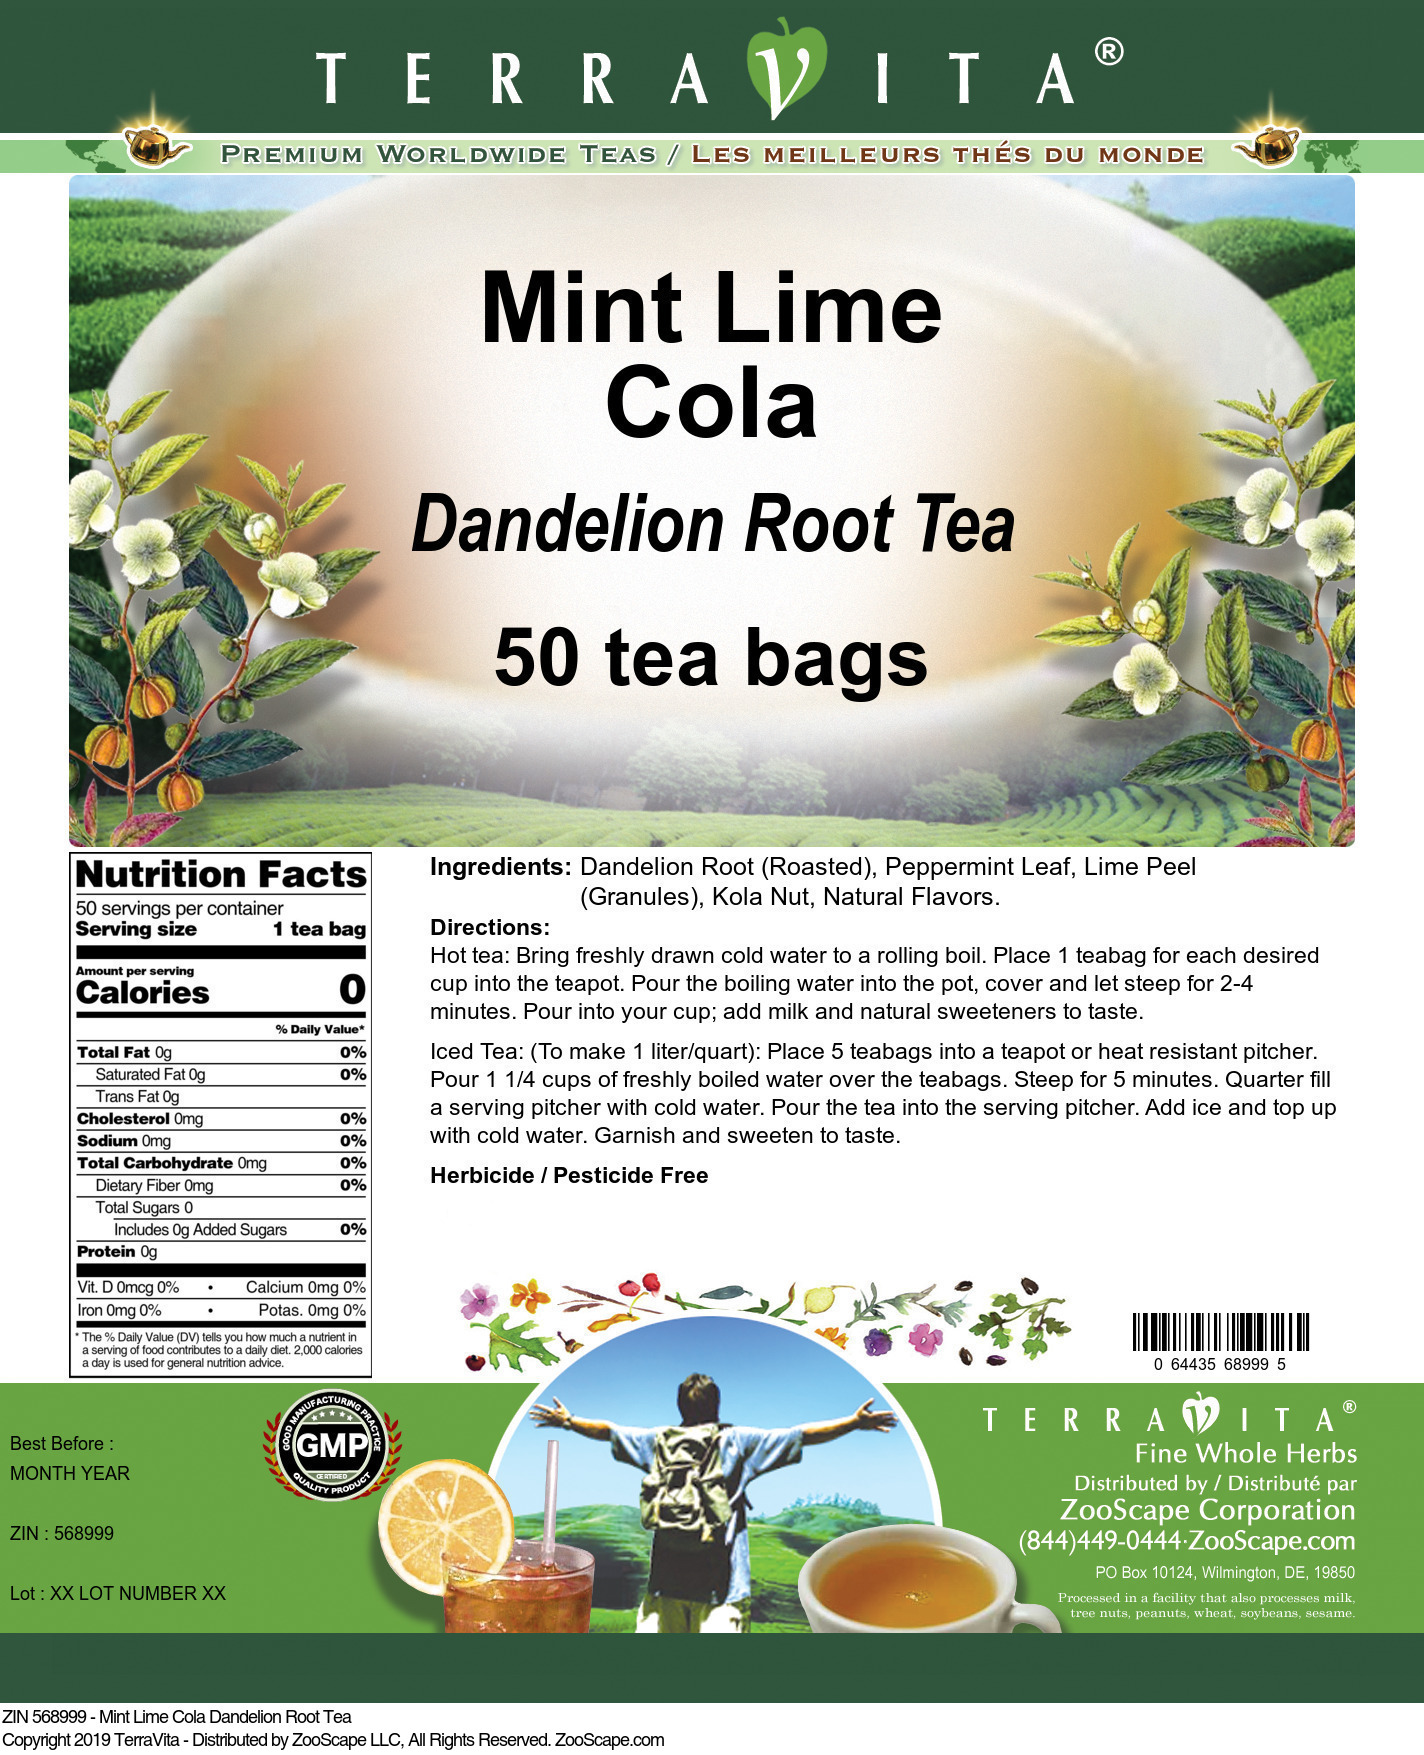 Mint Lime Cola Dandelion Root Tea - Label